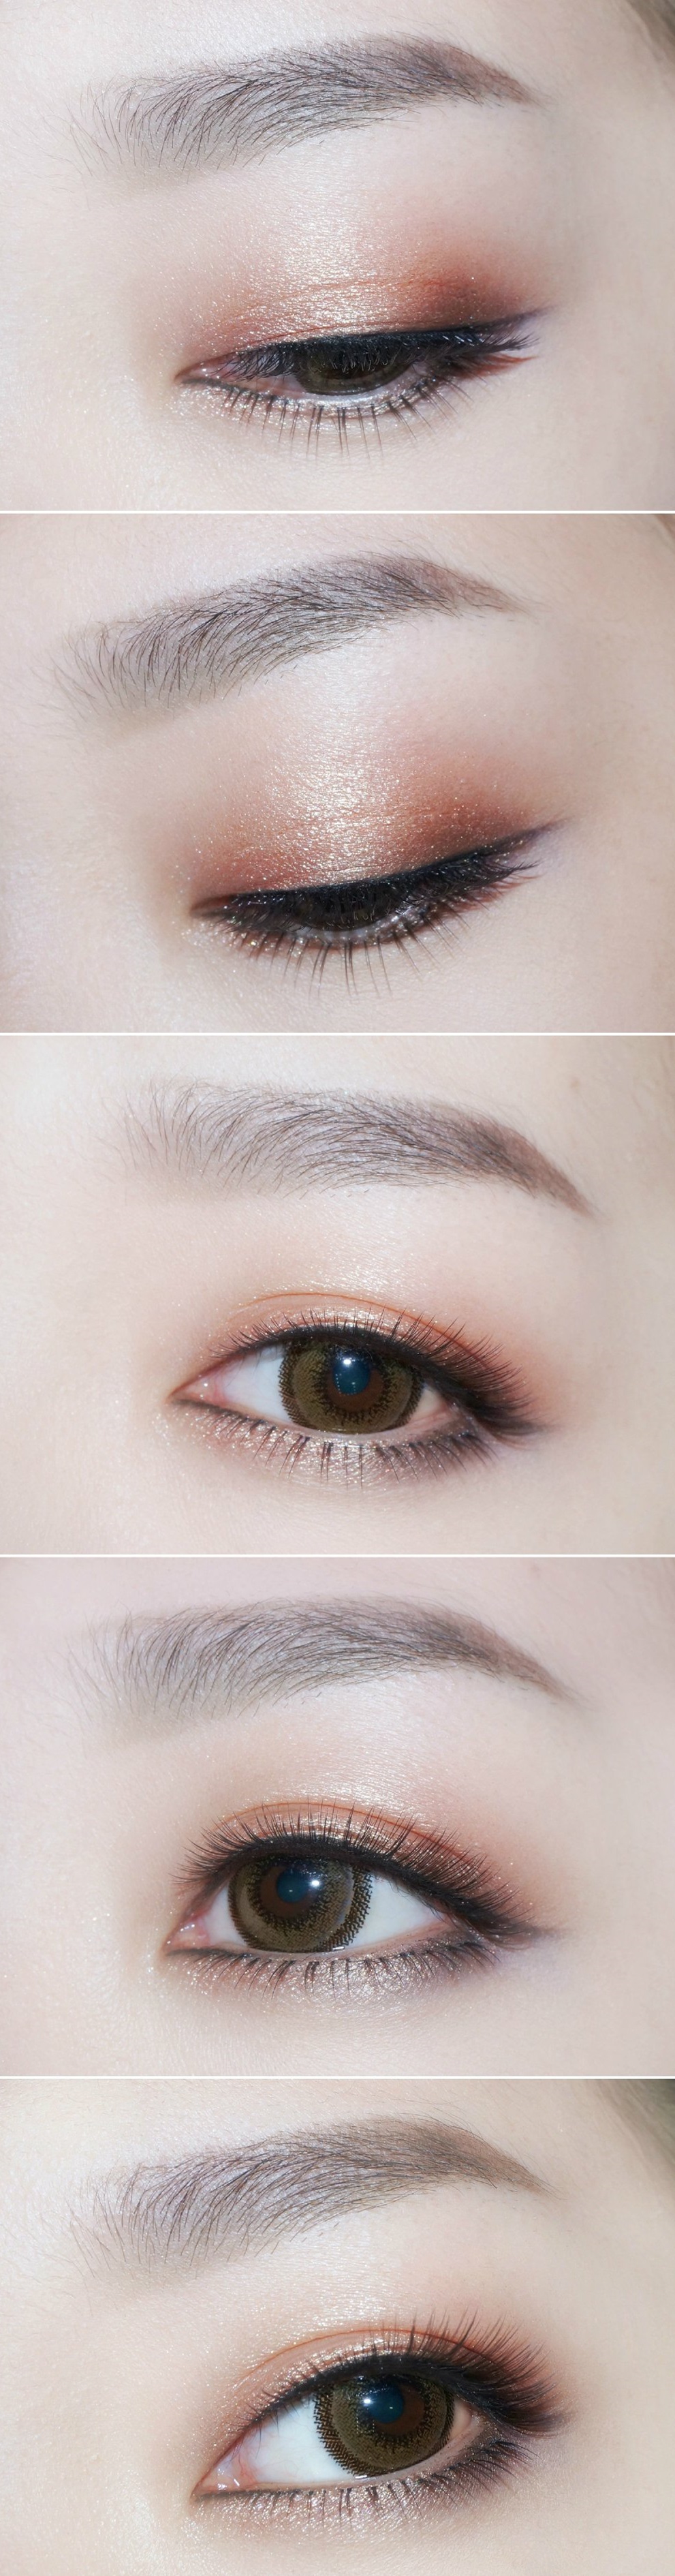 悦诗风吟Innisfree Shimmer系列单色眼影全试色+三种搭配眼影画法